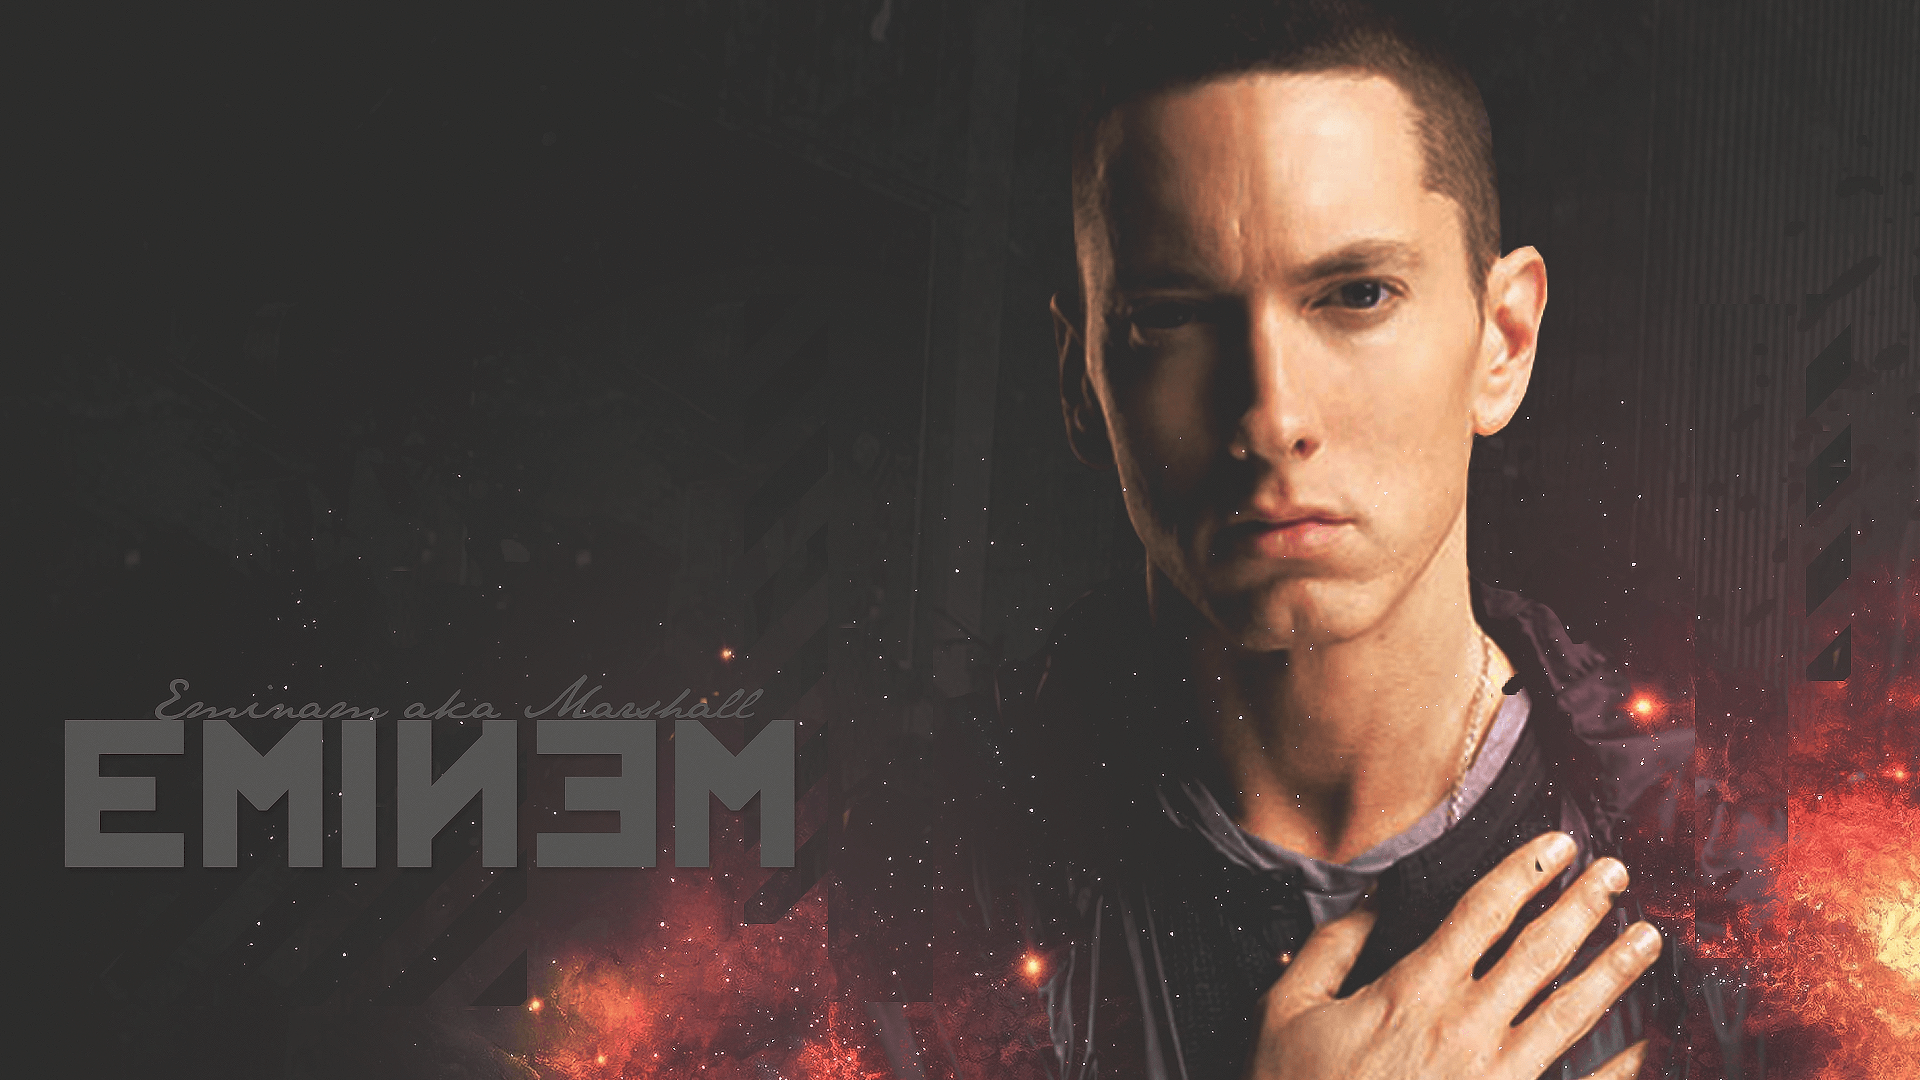 Eminem Wallpapers, Eminem Backgrounds for PC.